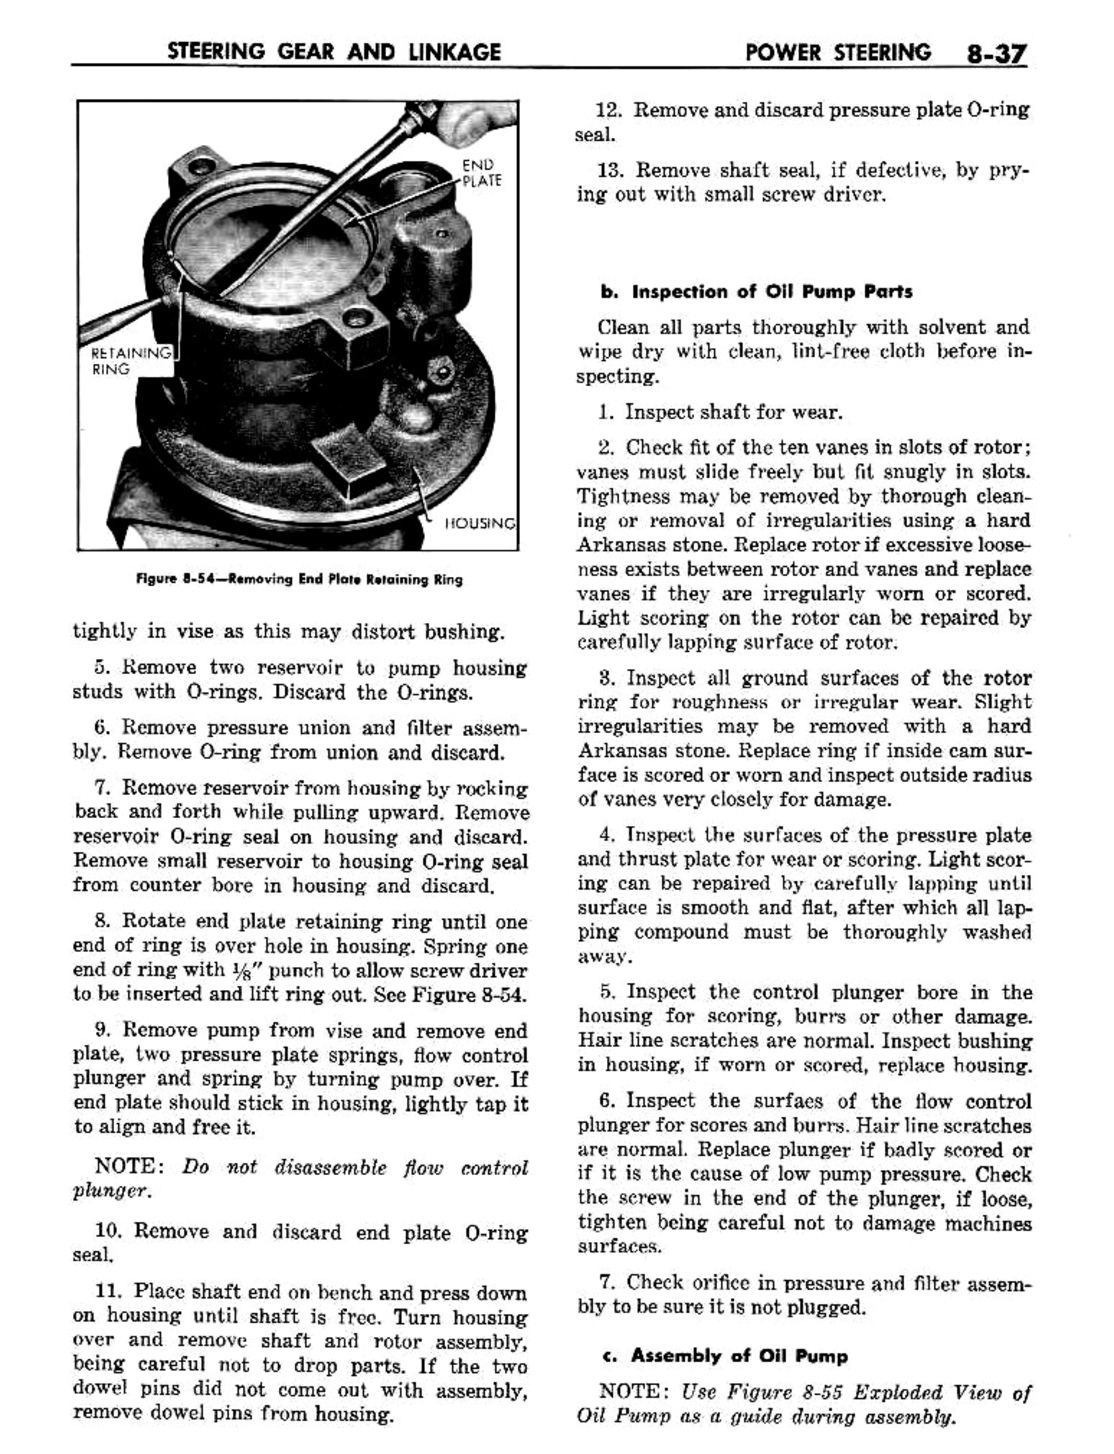 n_09 1960 Buick Shop Manual - Steering-037-037.jpg